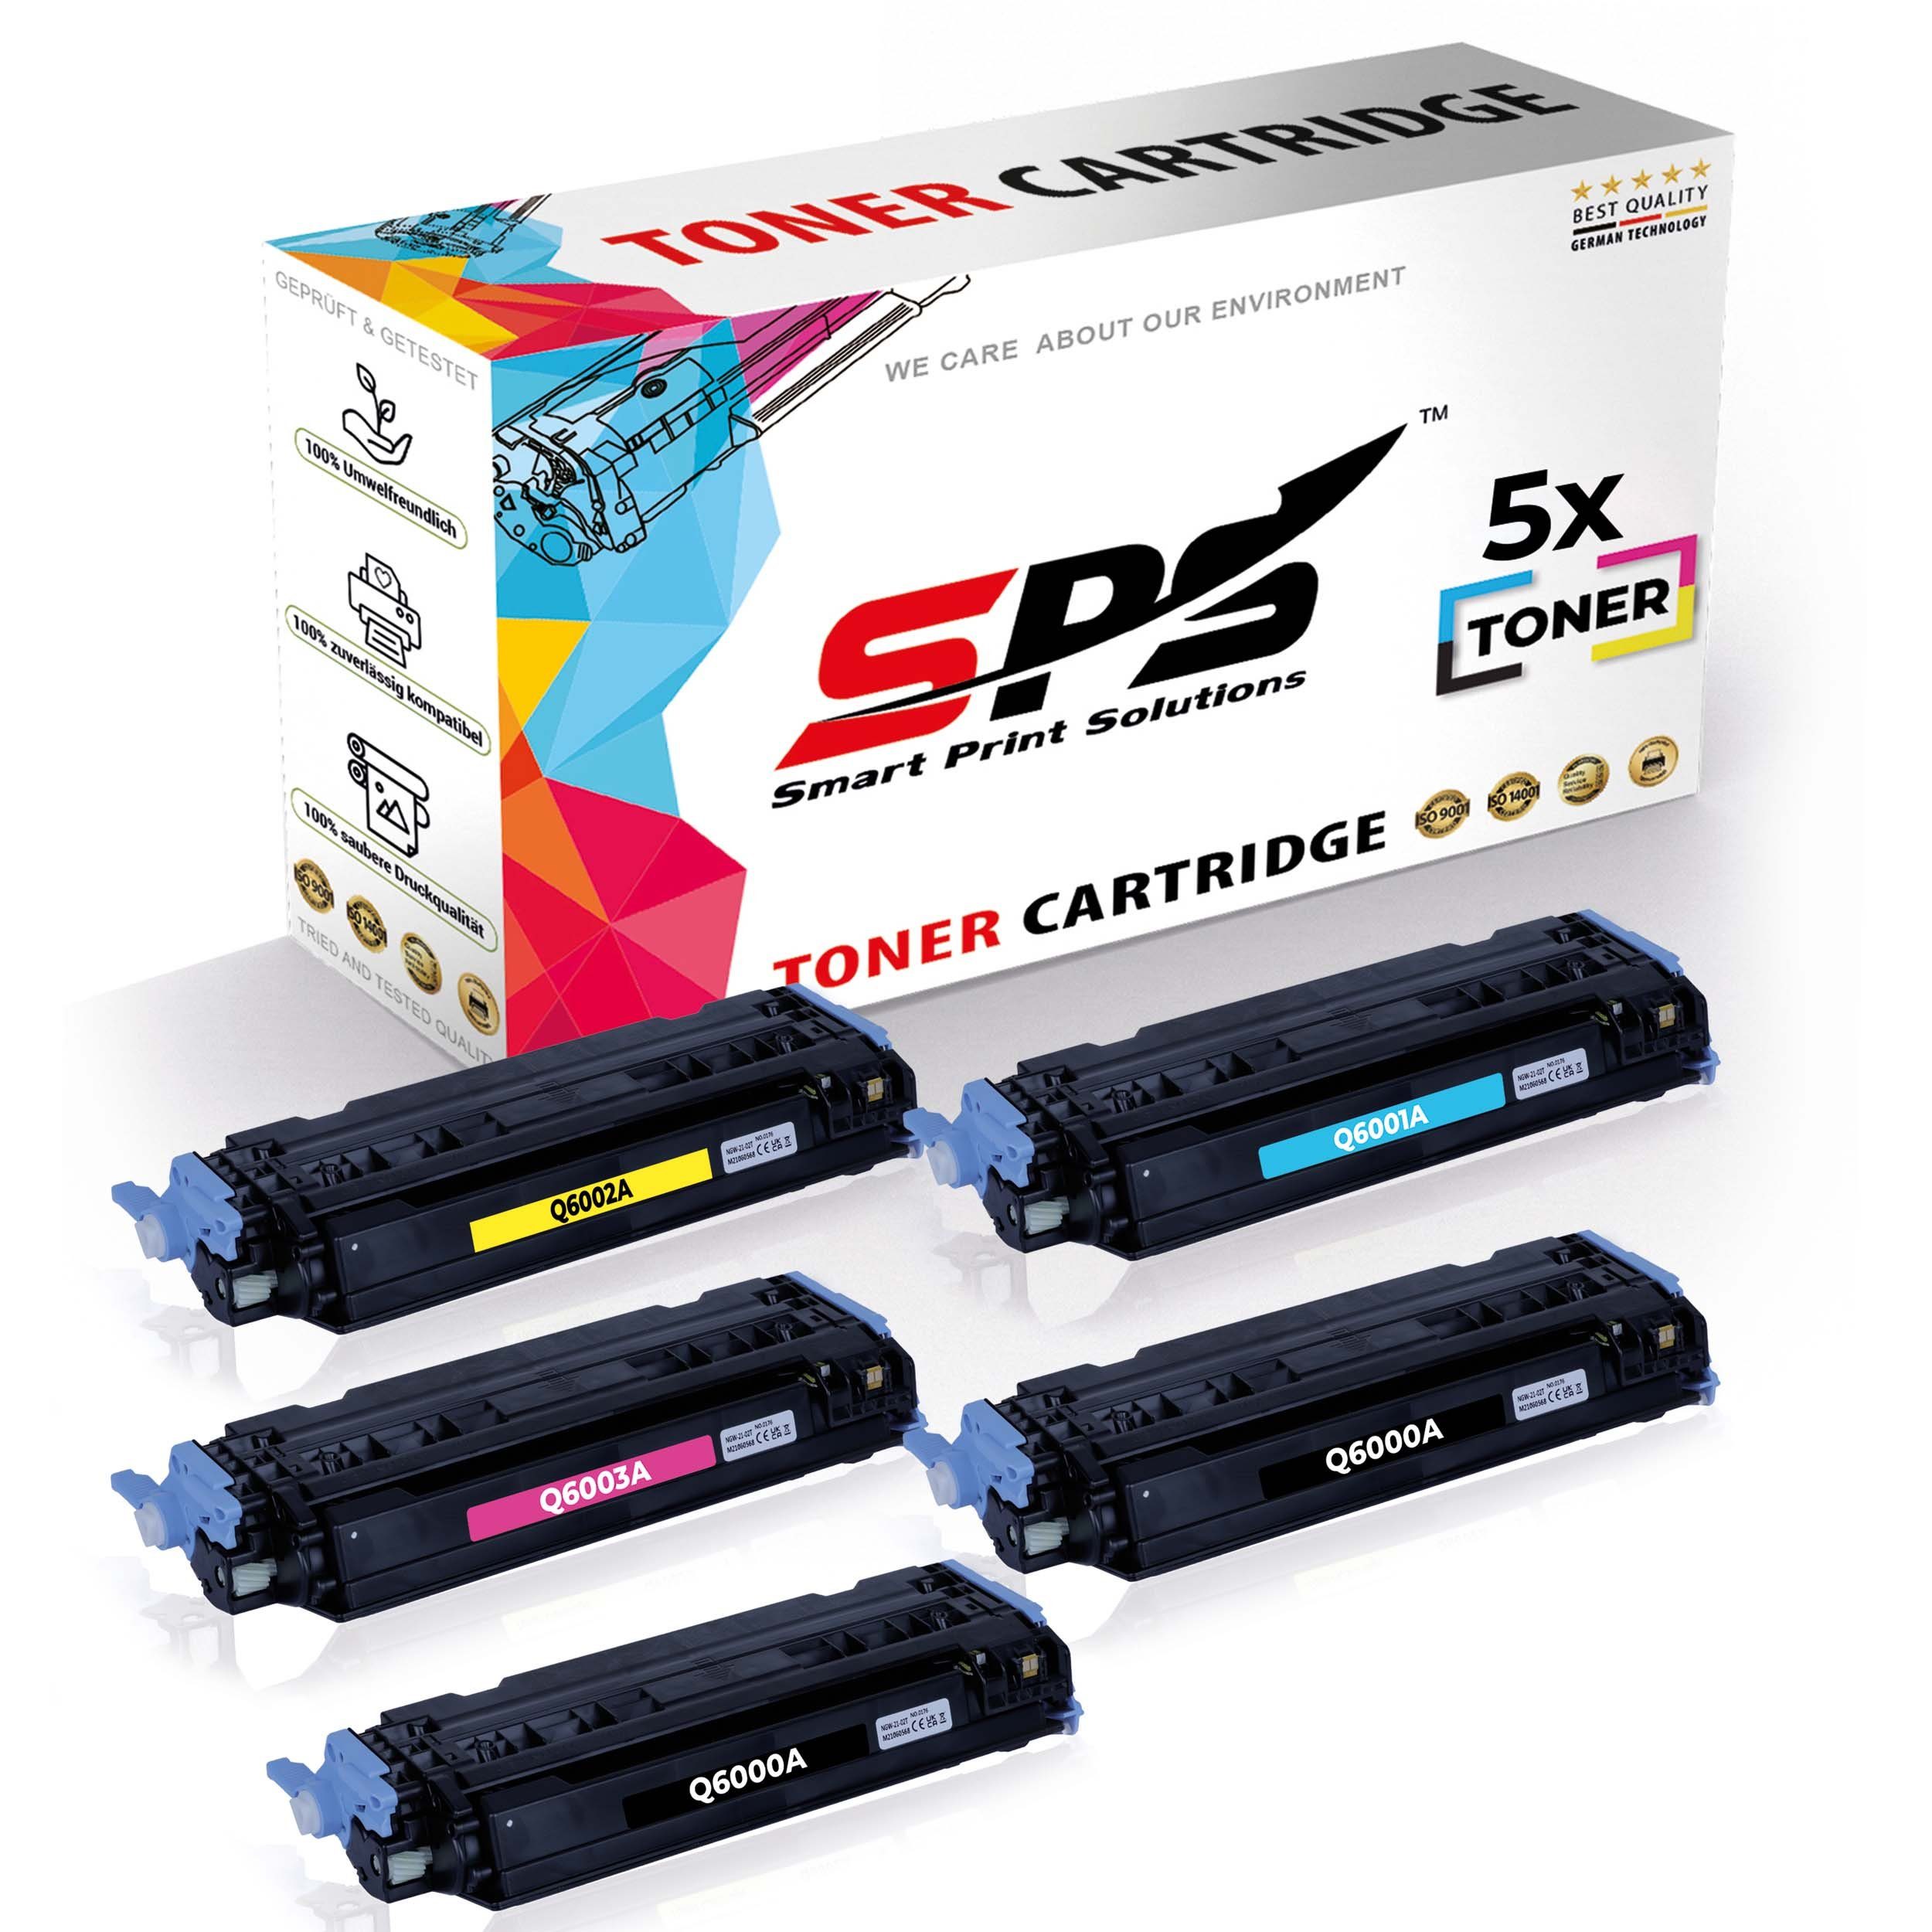 SPS Tonerkartusche 5x Multipack Set Kompatibel für HP Color LaserJet 2600 Series (124A/Q6, (5er Pack)